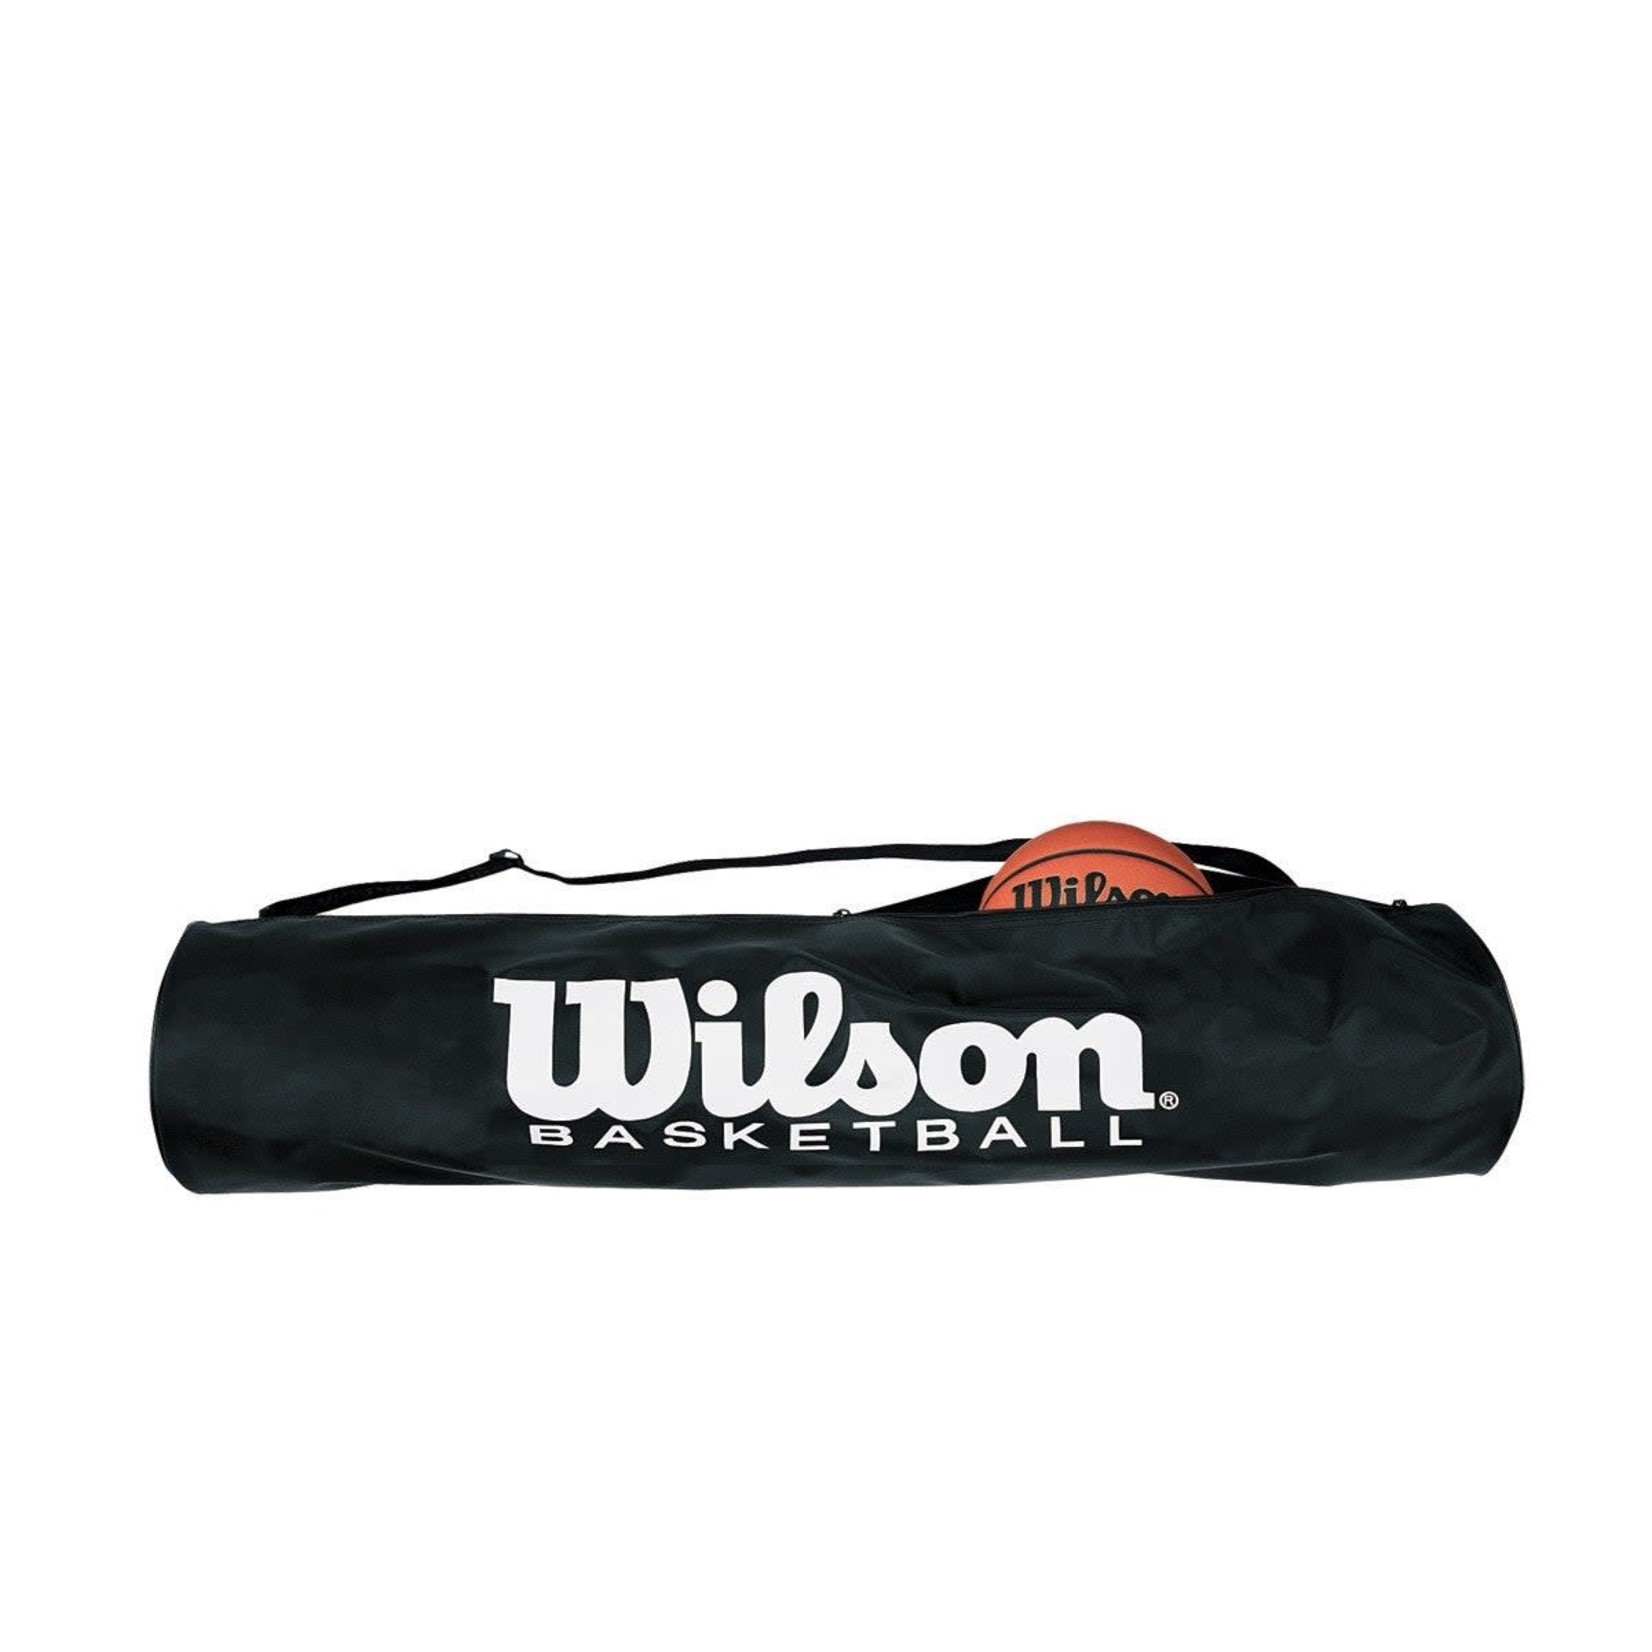 Wilson Wilson 6 Ball Travel Basketball Bag